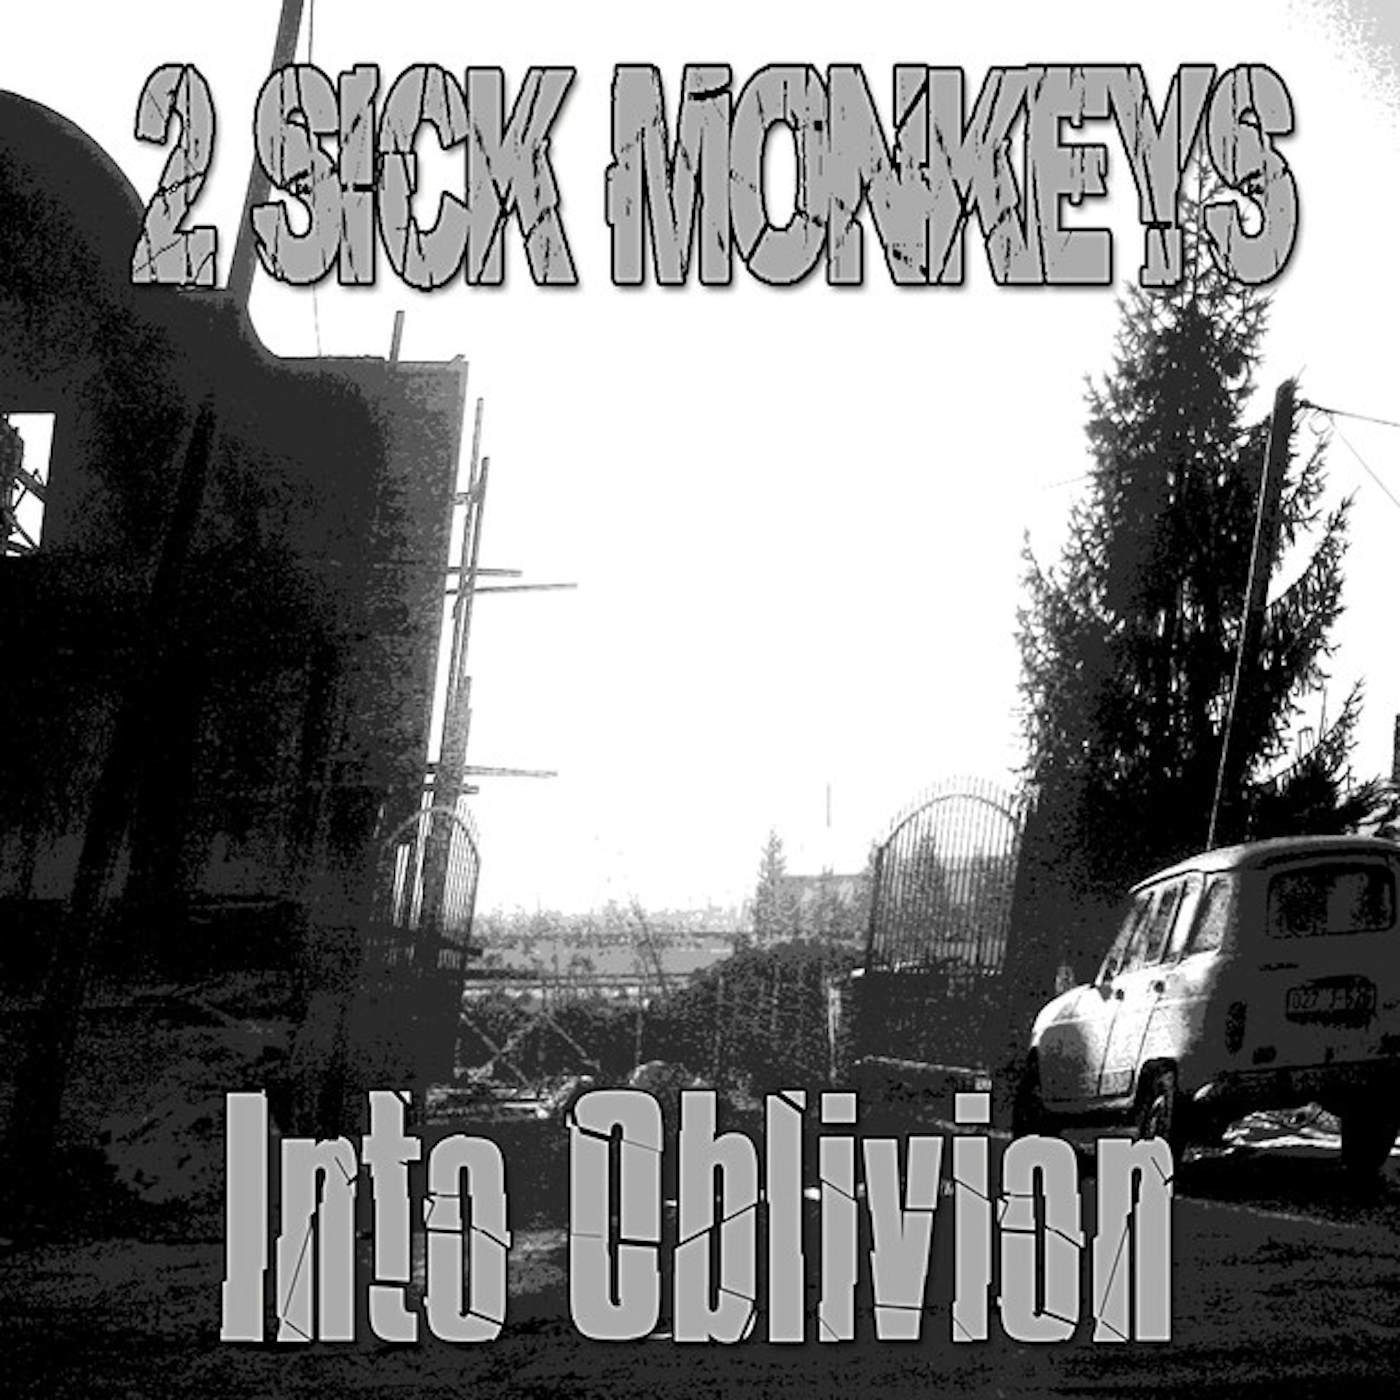 2 Sick Monkeys Into Oblivion Vinyl Record